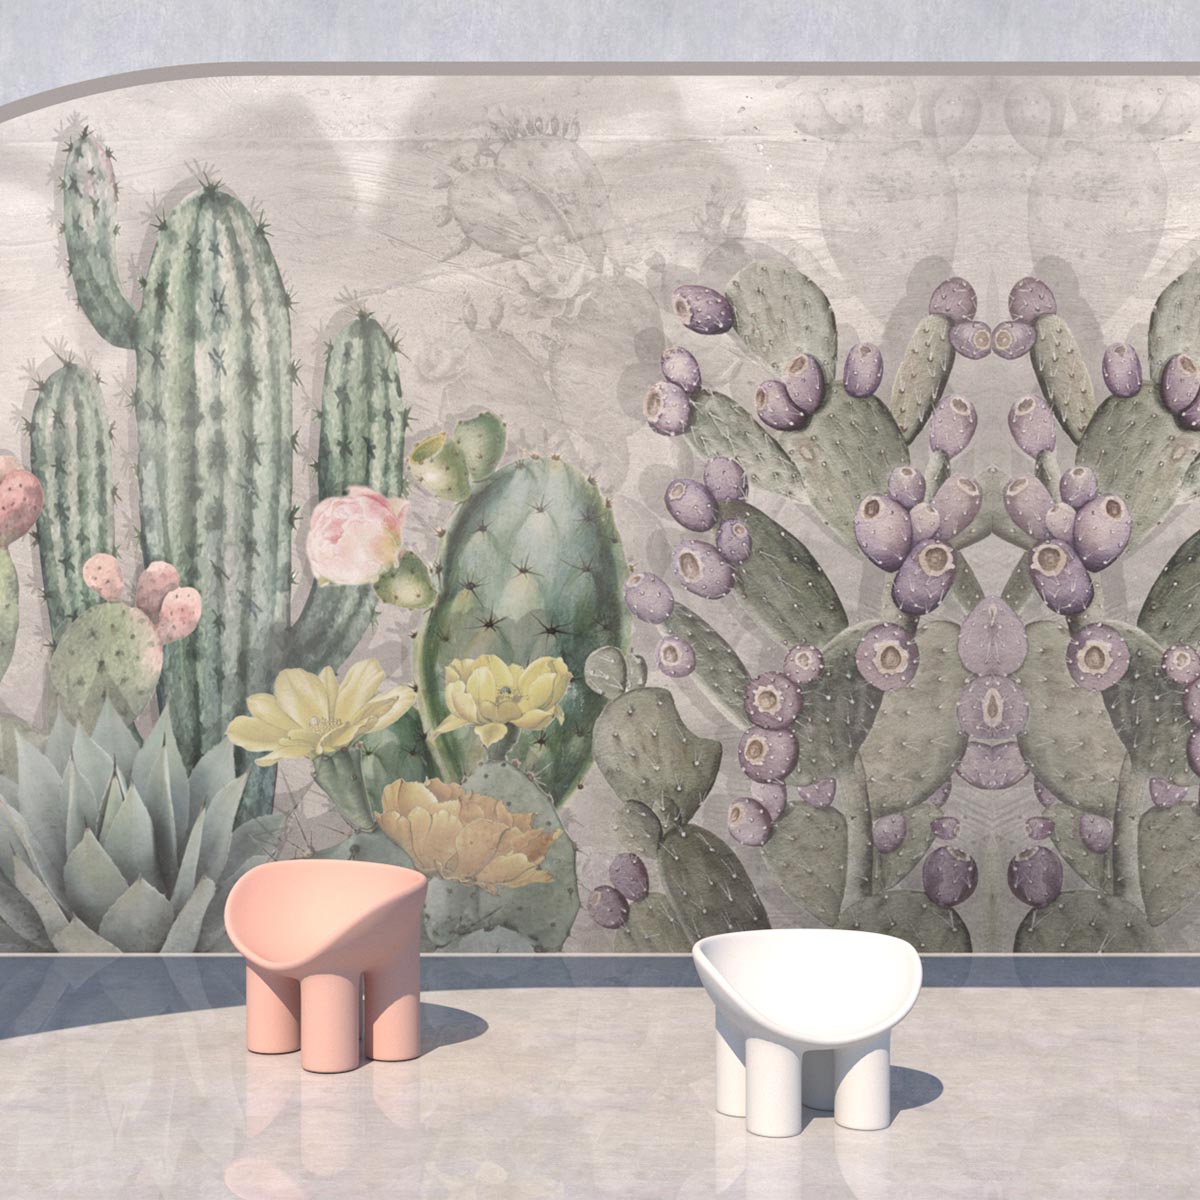 Rivestimento per pareti Cactus, carta vinilica TNT by Officinarkitettura